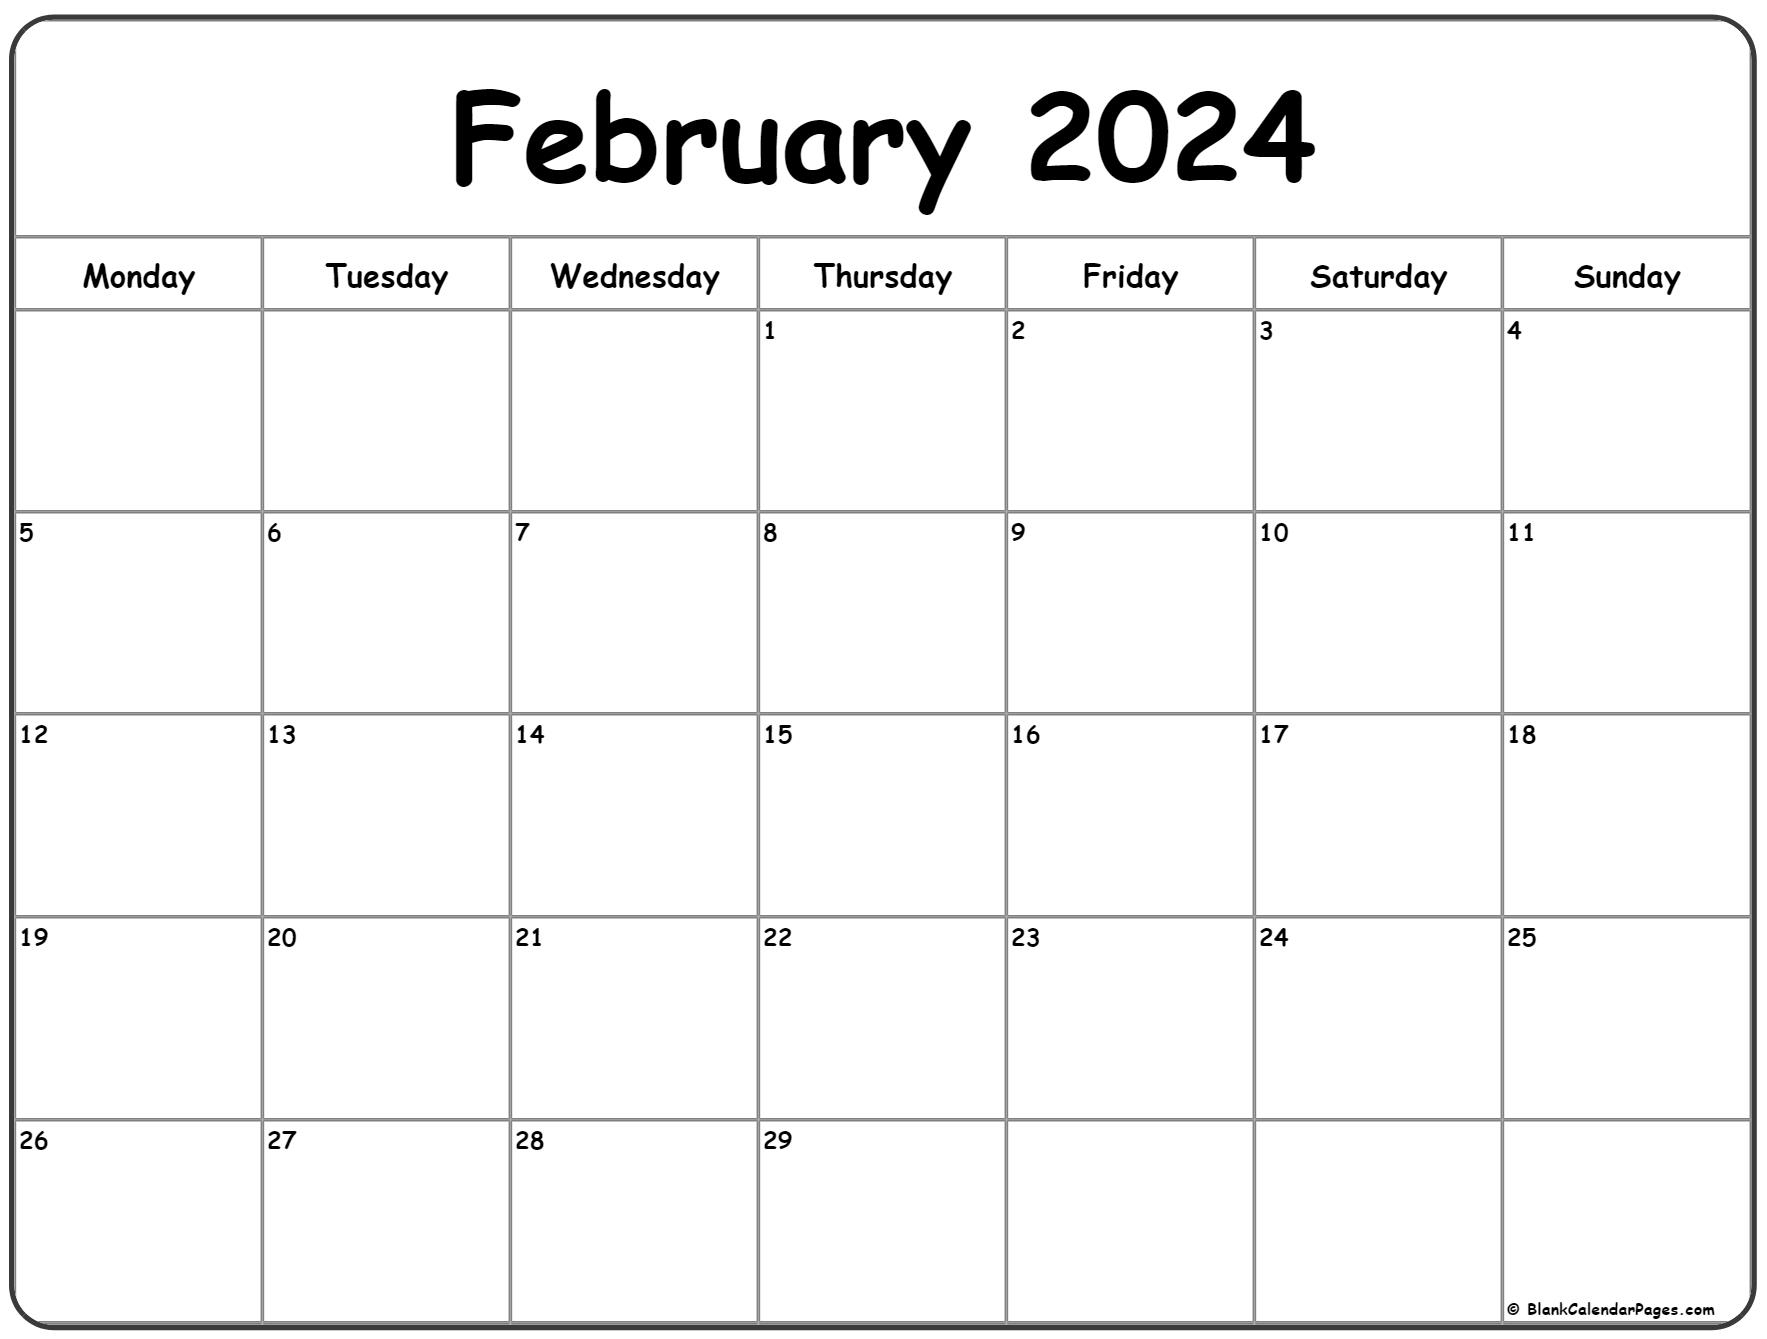 February 2024 Monday Calendar | Monday To Sunday for Printable 2024 February Calendar